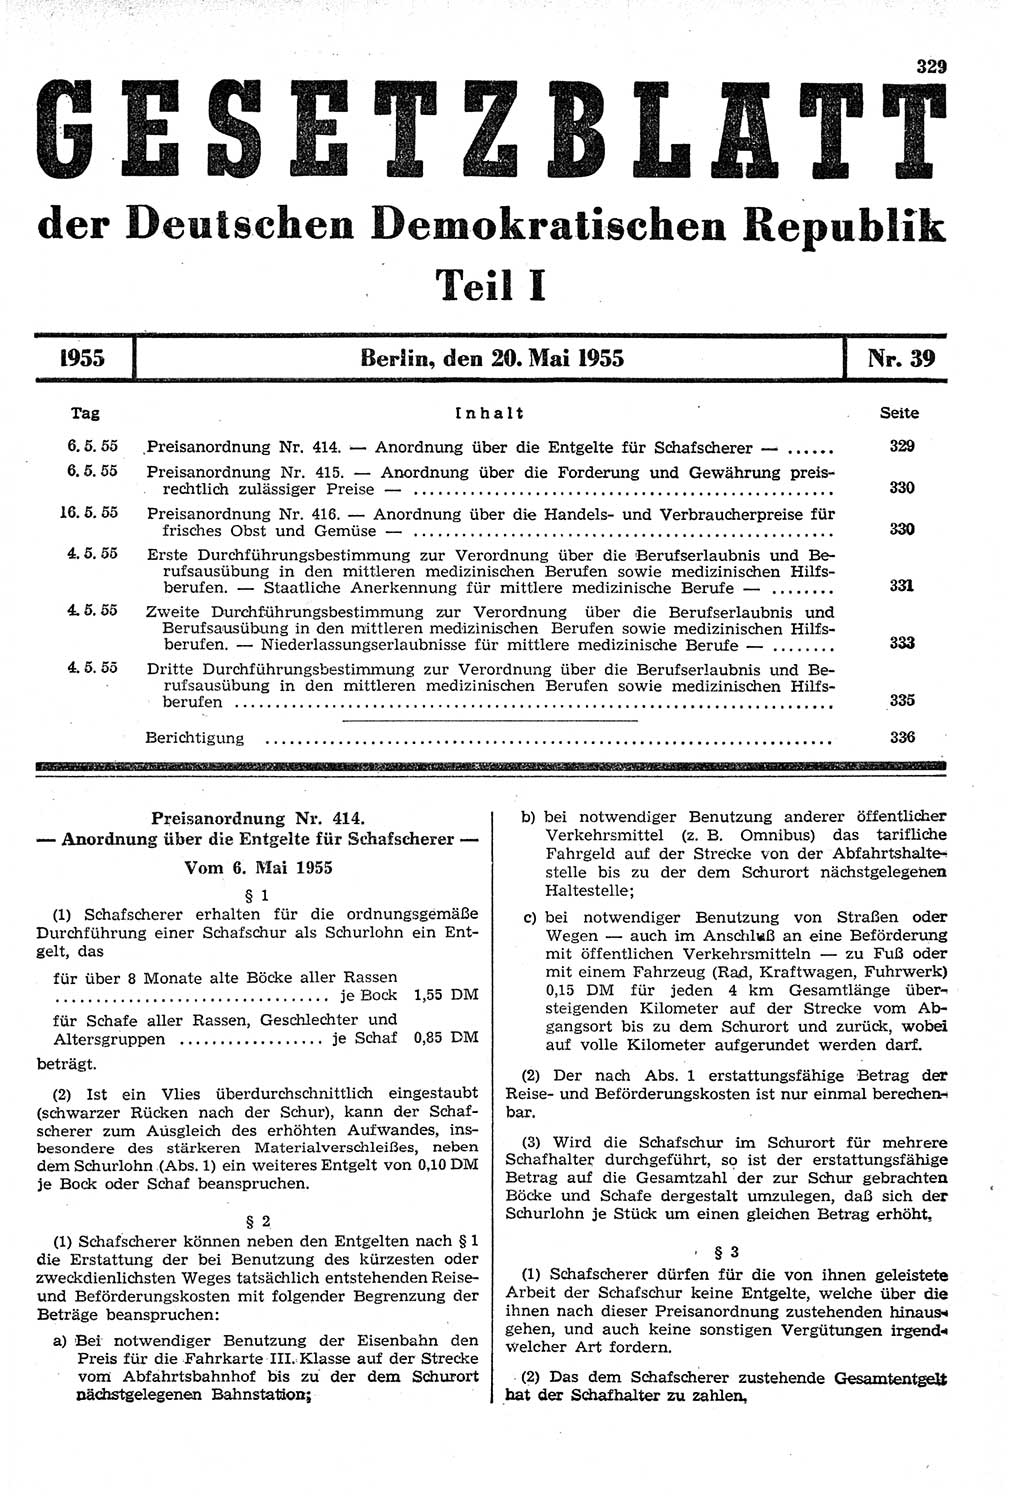 Gesetzblatt (GBl.) der Deutschen Demokratischen Republik (DDR) Teil Ⅰ 1955, Seite 329 (GBl. DDR Ⅰ 1955, S. 329)